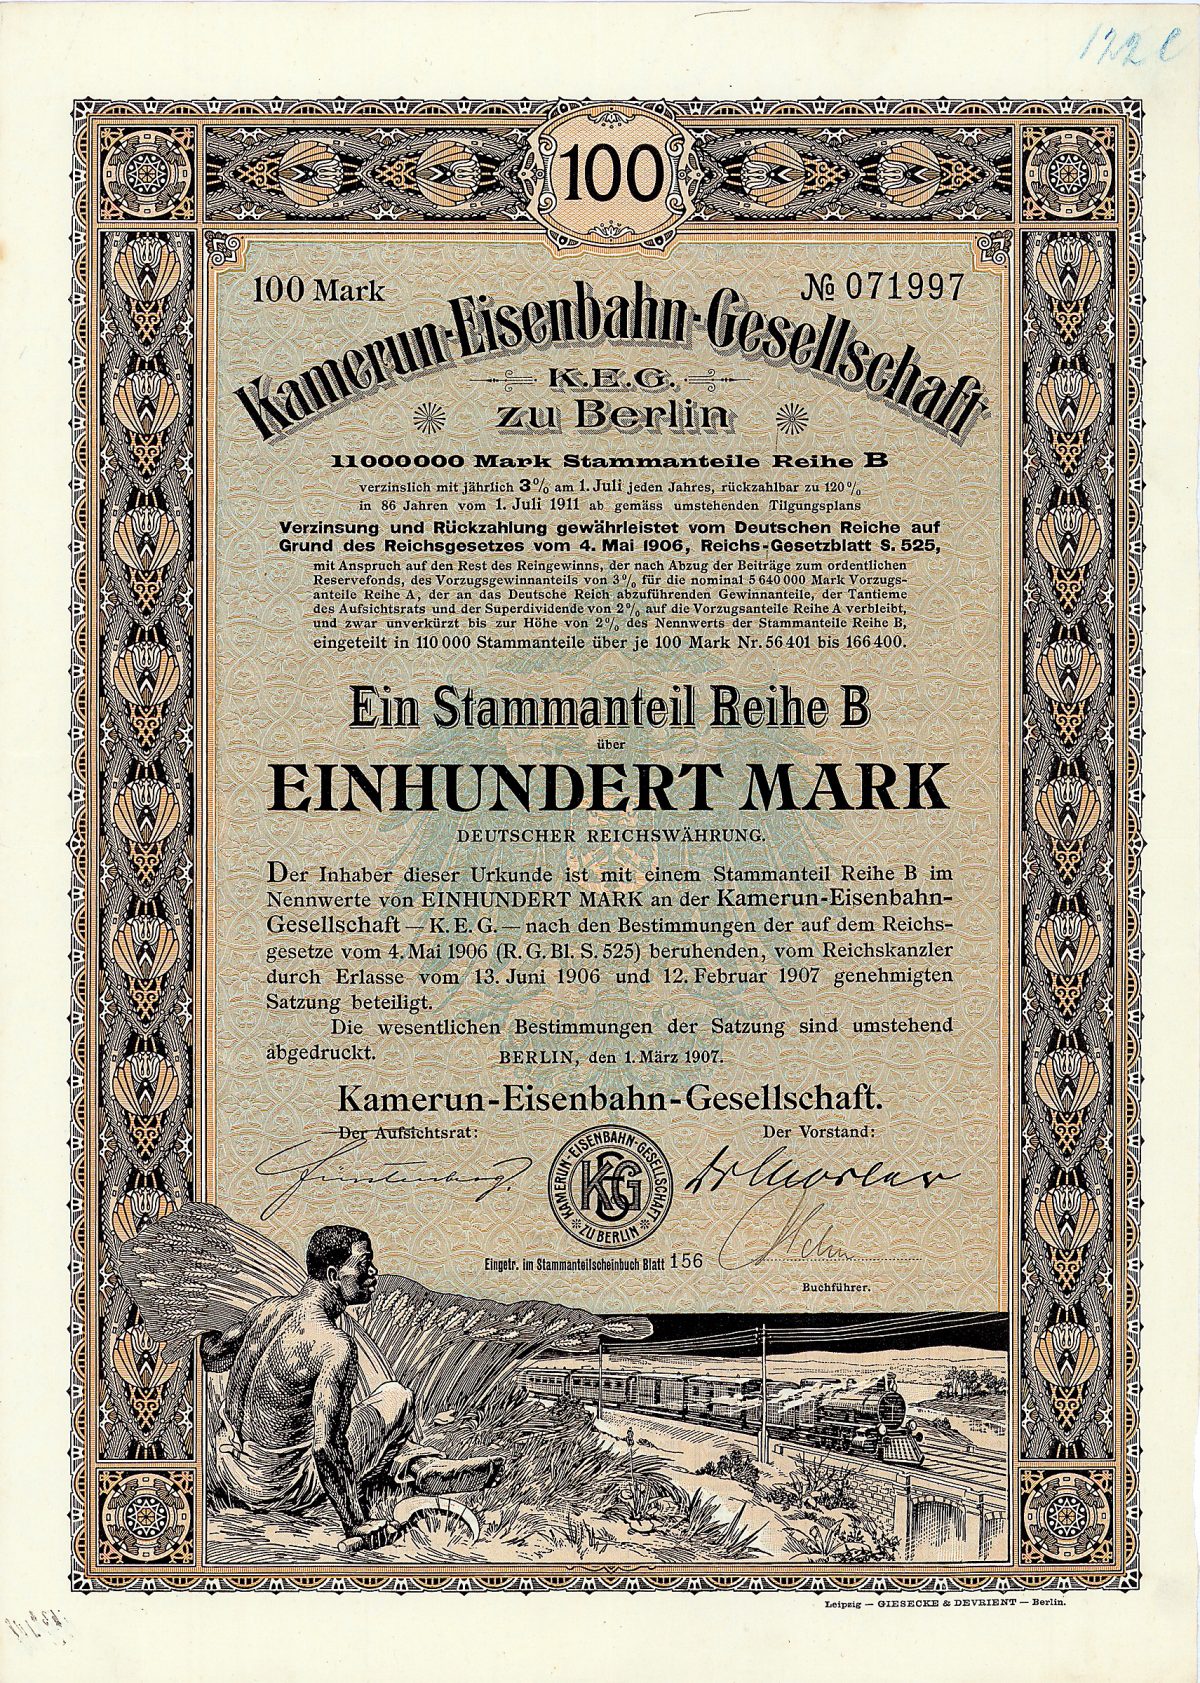 Kamerun-Eisenbahn-Gesellschaft Anteil B 100 Mark, Nr. 71997 Berlin, 1.3.1907